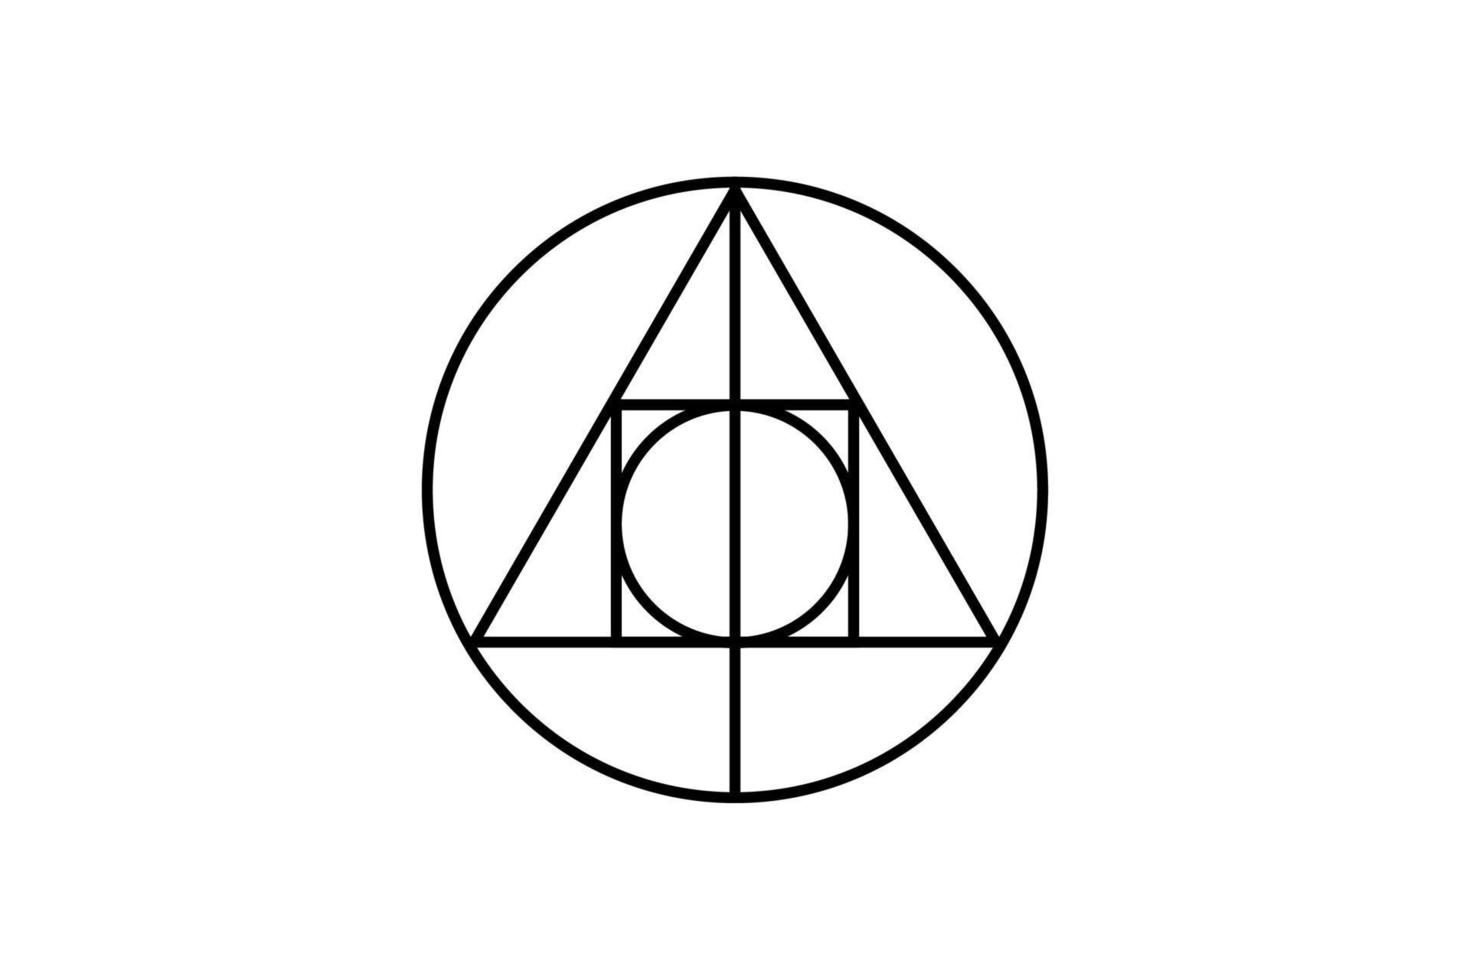 geometría mágica sagrada, símbolo oculto, símbolo alquímico que muestra la interacción entre los cuatro elementos de la materia que simbolizan la piedra filosofal, vector aislado sobre fondo blanco